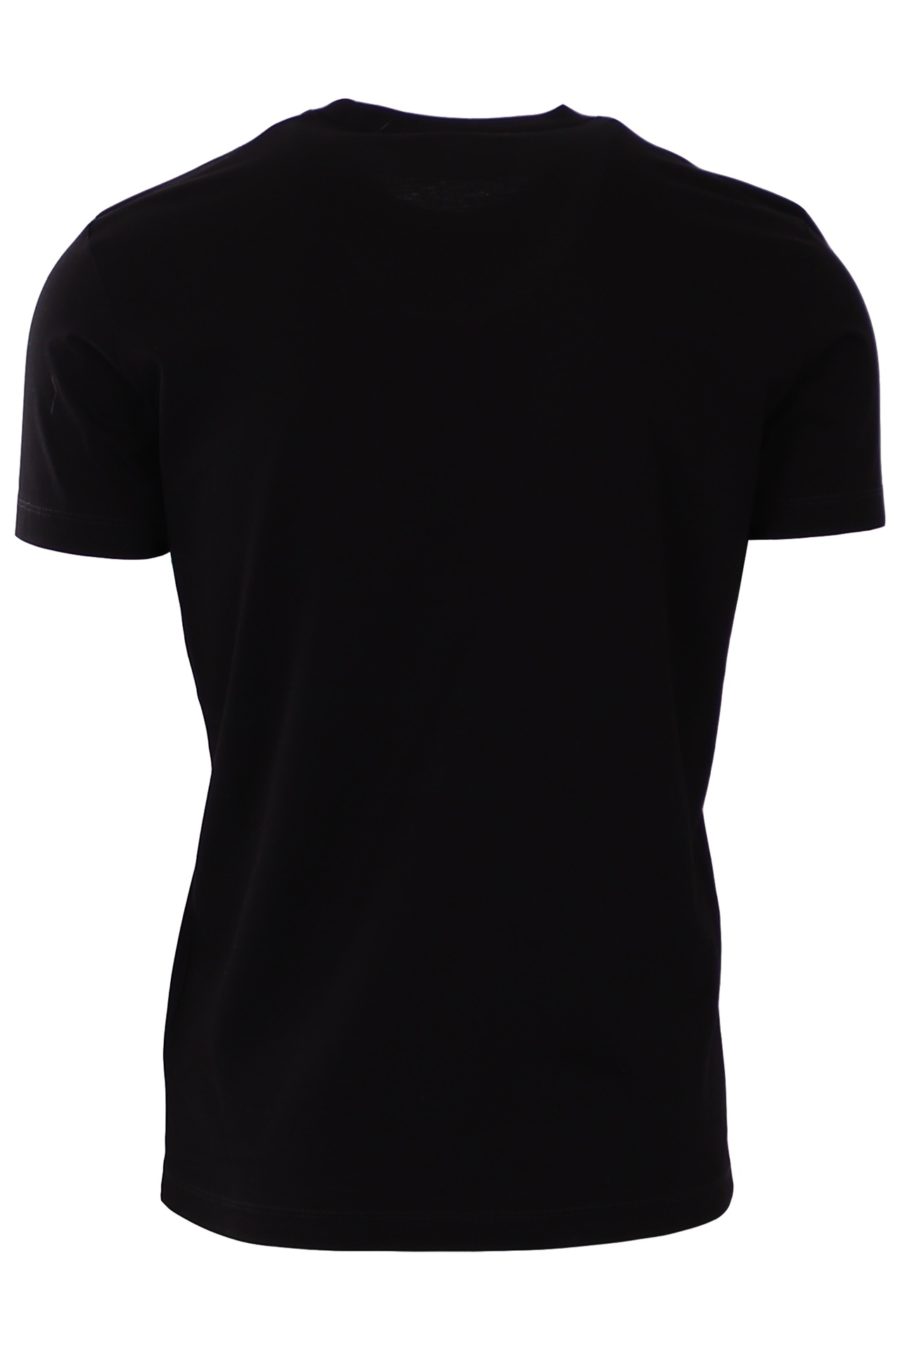 T-shirt Dsquared2 noir avec icône blanche au milieu - e26e2ba549875b76d19d14d1428b44ebe544ff26bb9